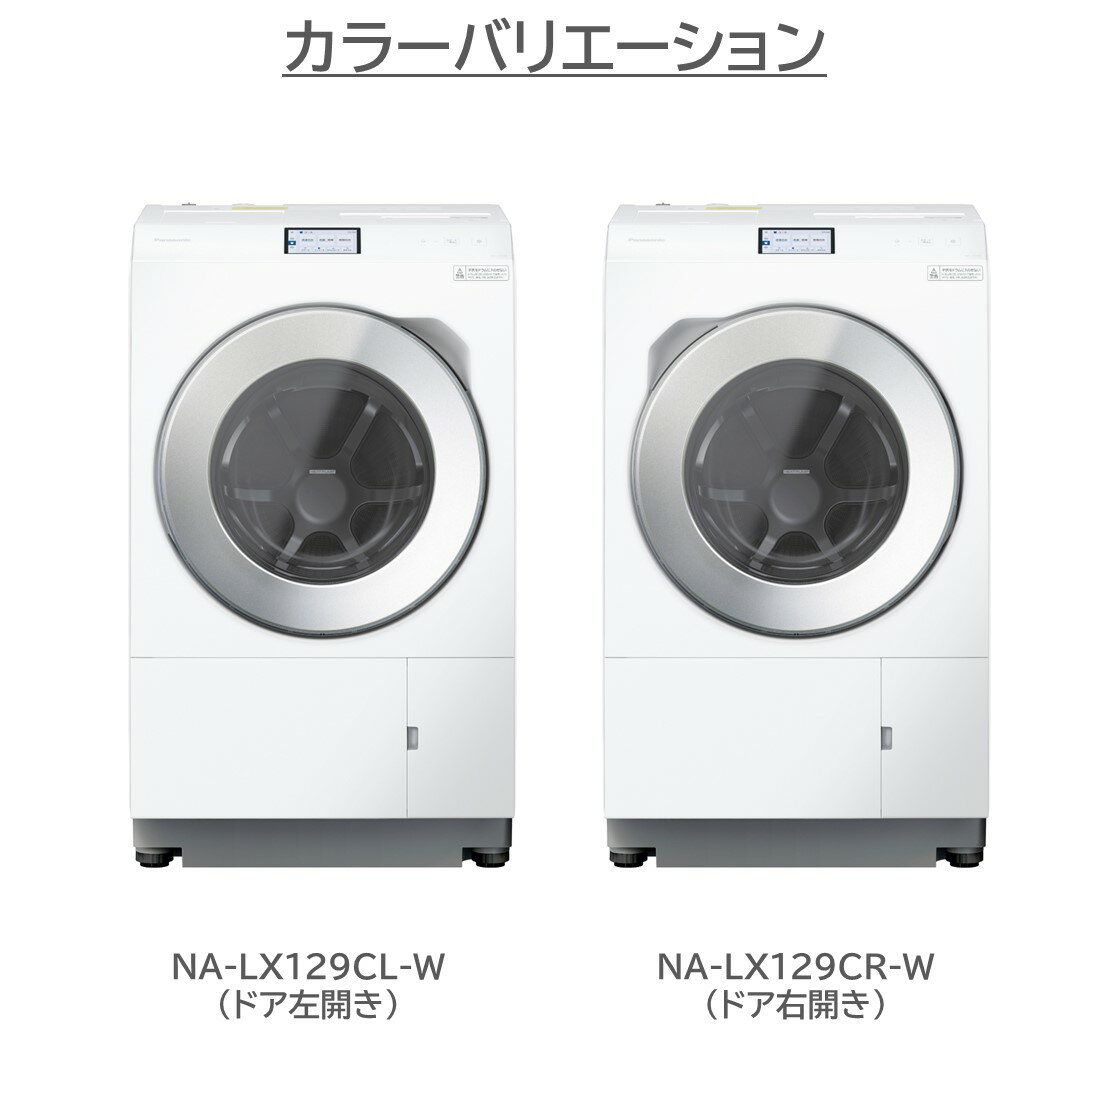 【公式店】パナソニック ななめドラム洗濯乾燥機 LXシリーズ 洗濯12kg/乾燥6kg 選べる扉開き（右開き/左開き） NA-LX129CL/LX129CR 洗濯機 カラータッチパネル ナノイーX 温水機能 スマホで洗濯 トリプル自動投入 はやふわ乾燥 ヒートポンプ方式 日本製 ドラム式洗濯乾燥機 3